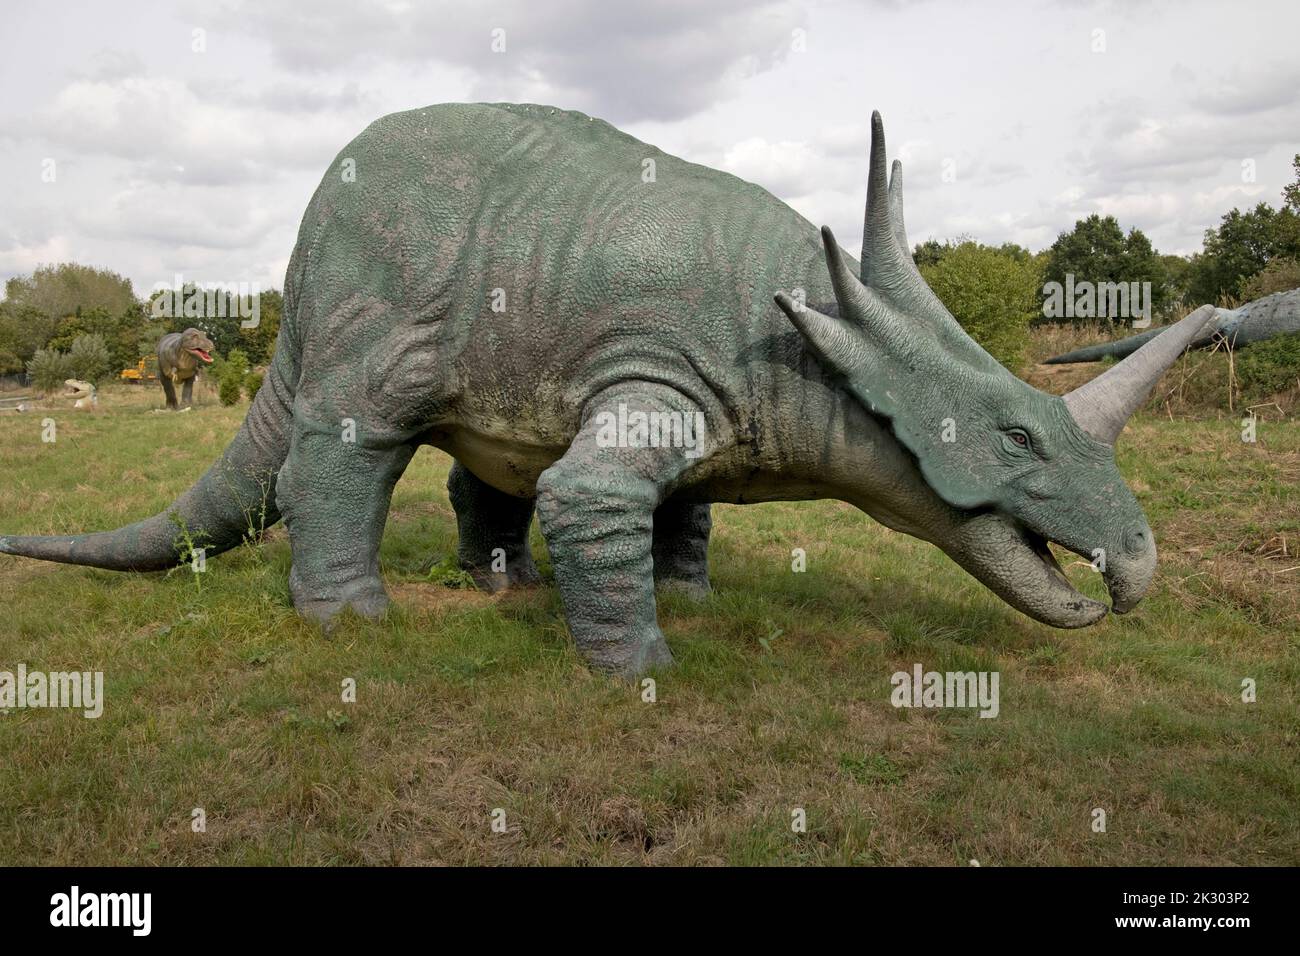 Lebensgroßes Modell des Styracosarus, einem pflanzenfressenden ceratopsianischen Dinosaurier bei All Things Wild, Honeybourne, Großbritannien Stockfoto